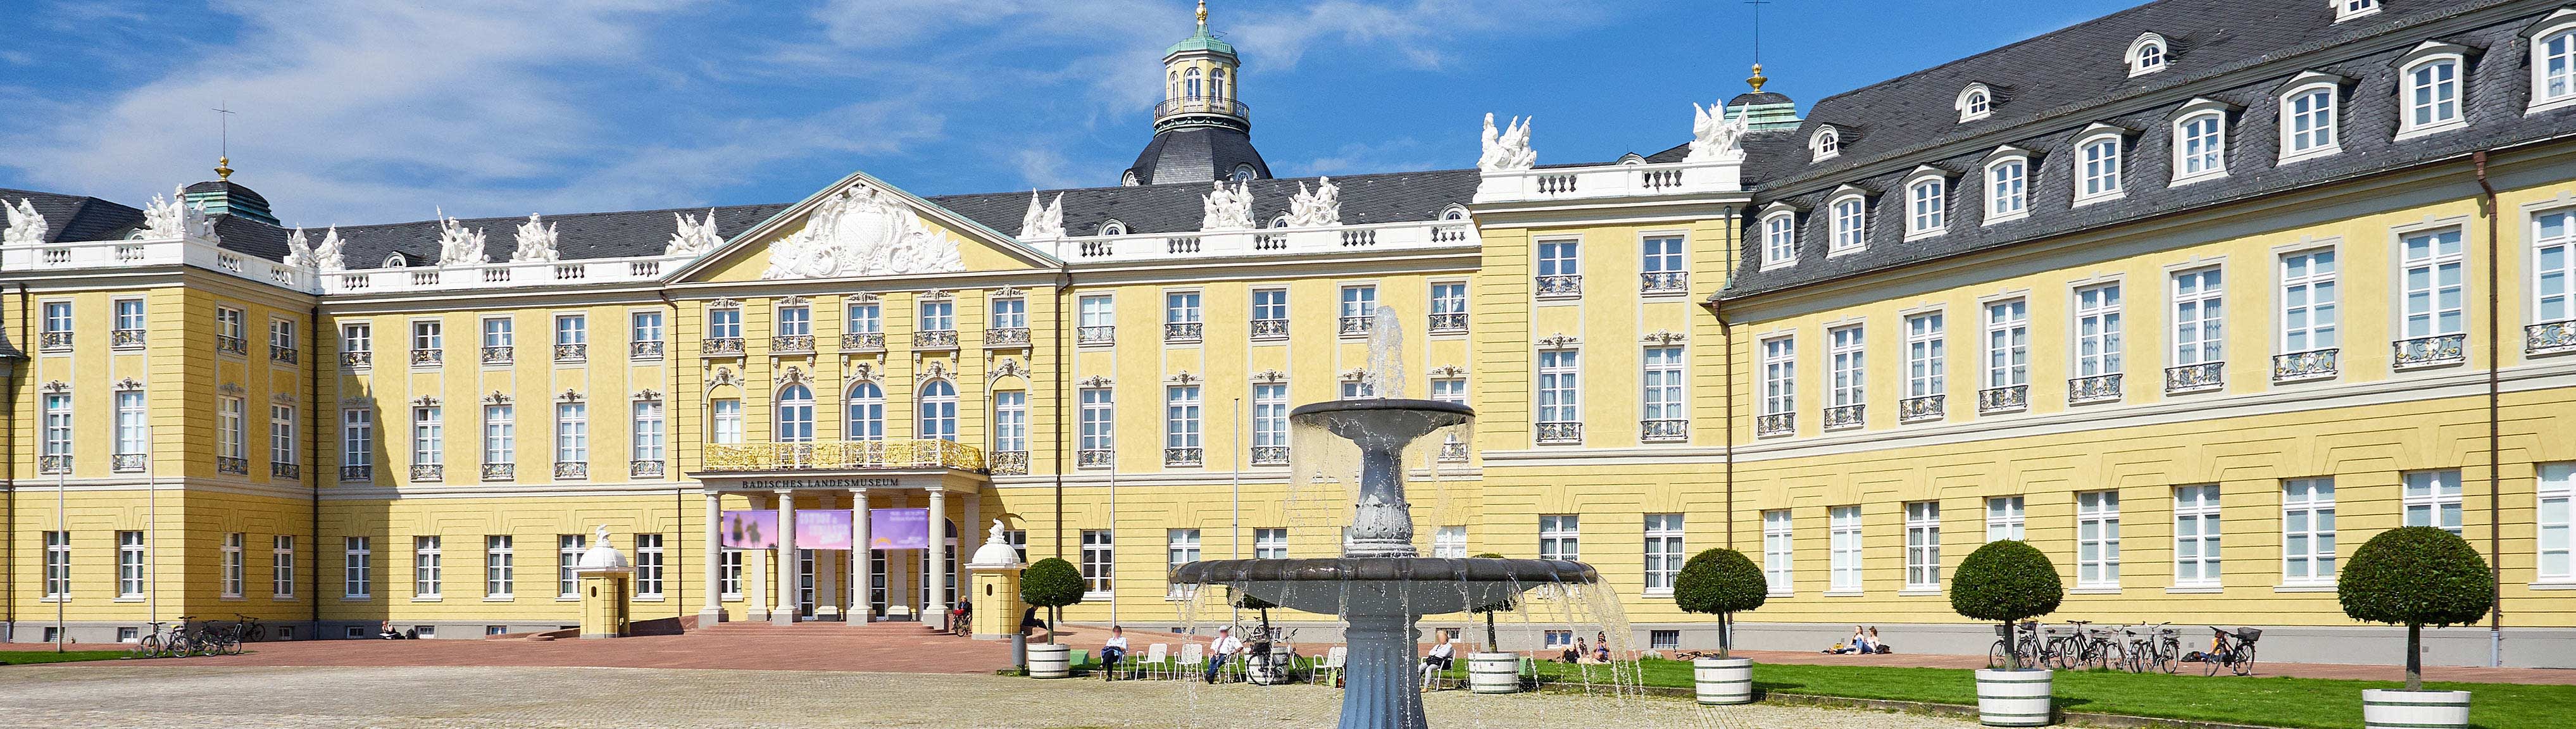 Ansicht des Schlosses in Karlsruhe mit Brunnen im Vordergrund